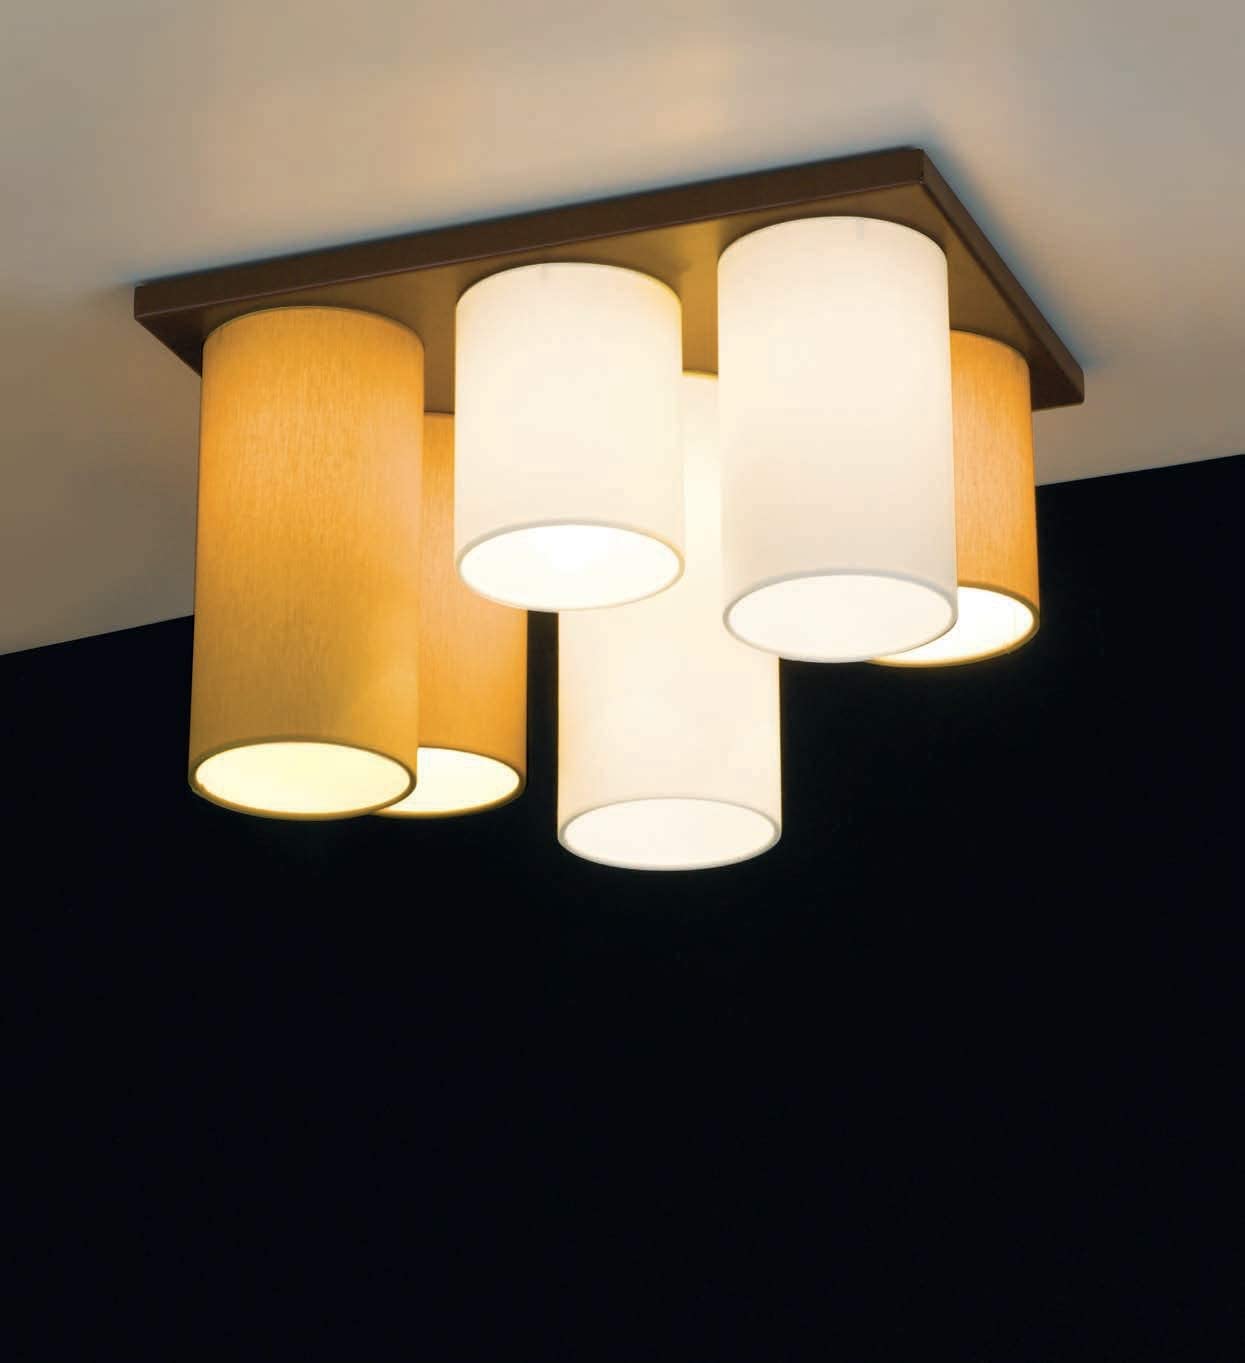 Plafoniera soffitto moderna a 6 luci in metallo laccato bruno opaco con paralumi in tessuto giallo oro e panna PR 6986/P6